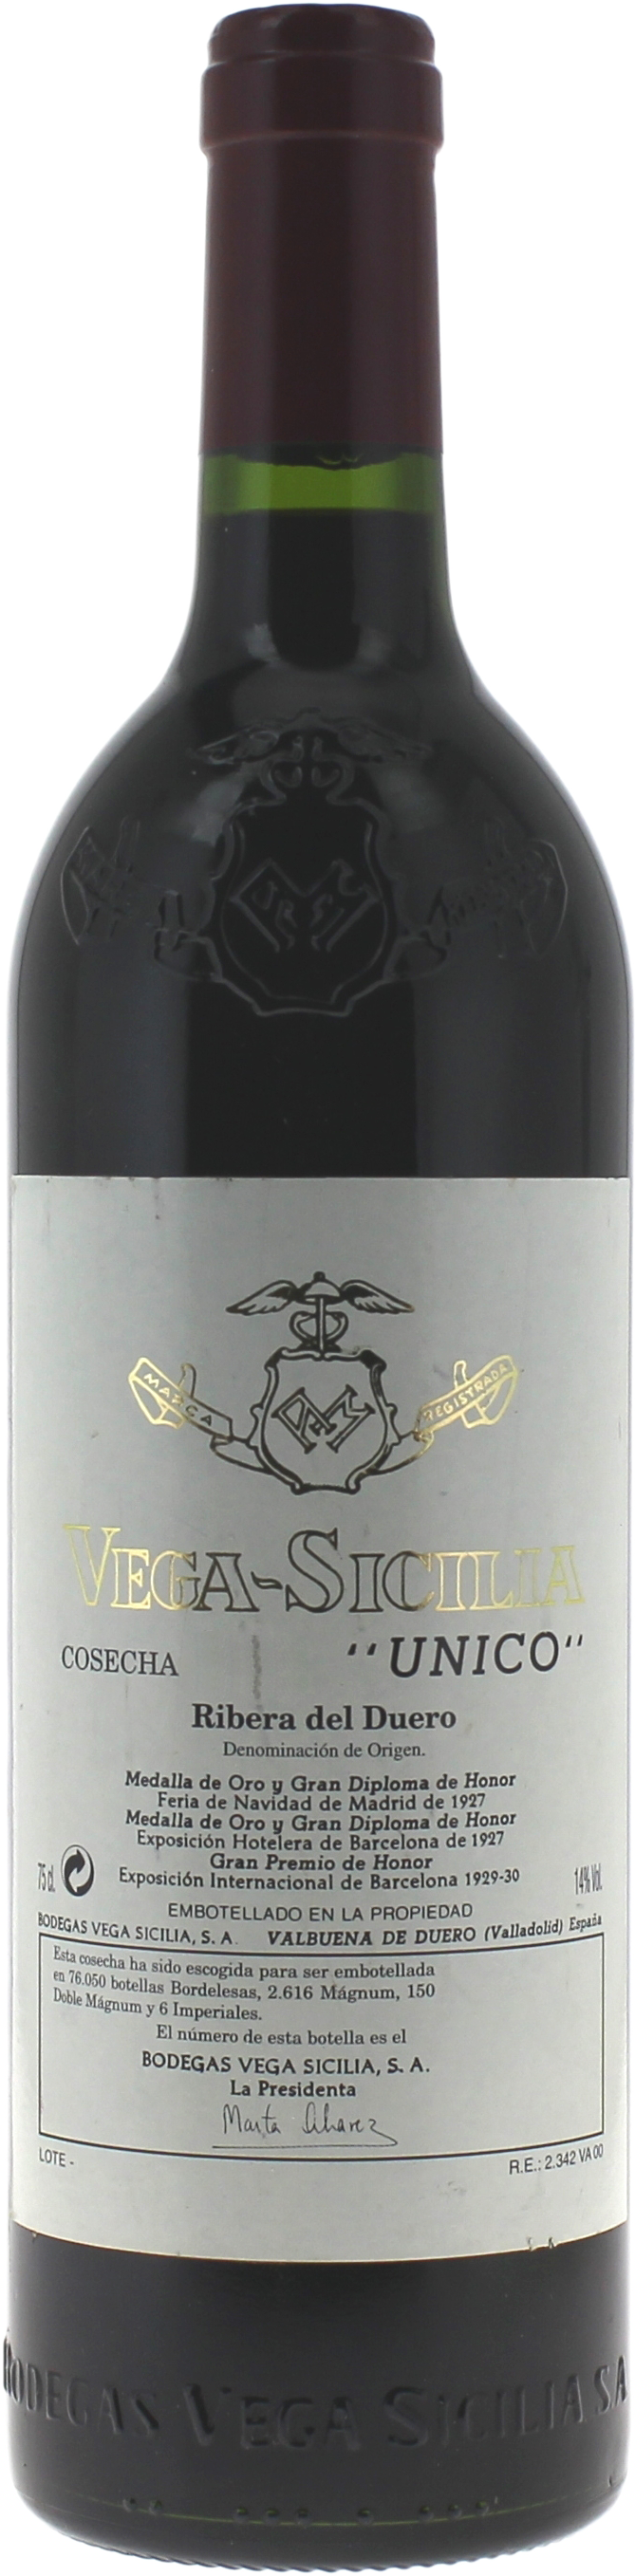 Vega sicilia unico 2000  Espagne, Vin Espagnol